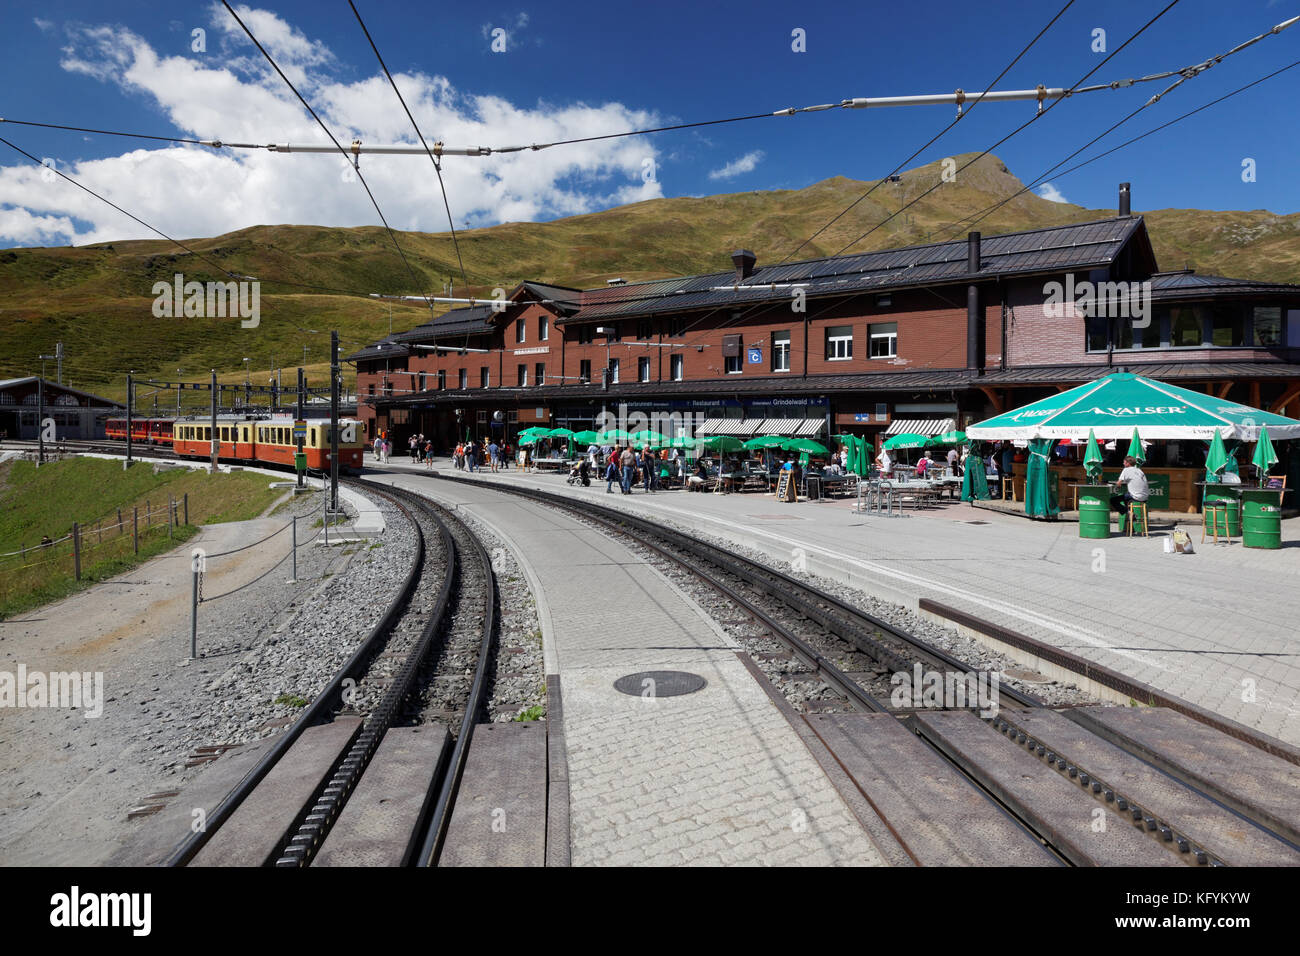 Bahnhof und Bahngleise in kleine Scheidegg, Berner Oberland, Schweiz Stockfoto